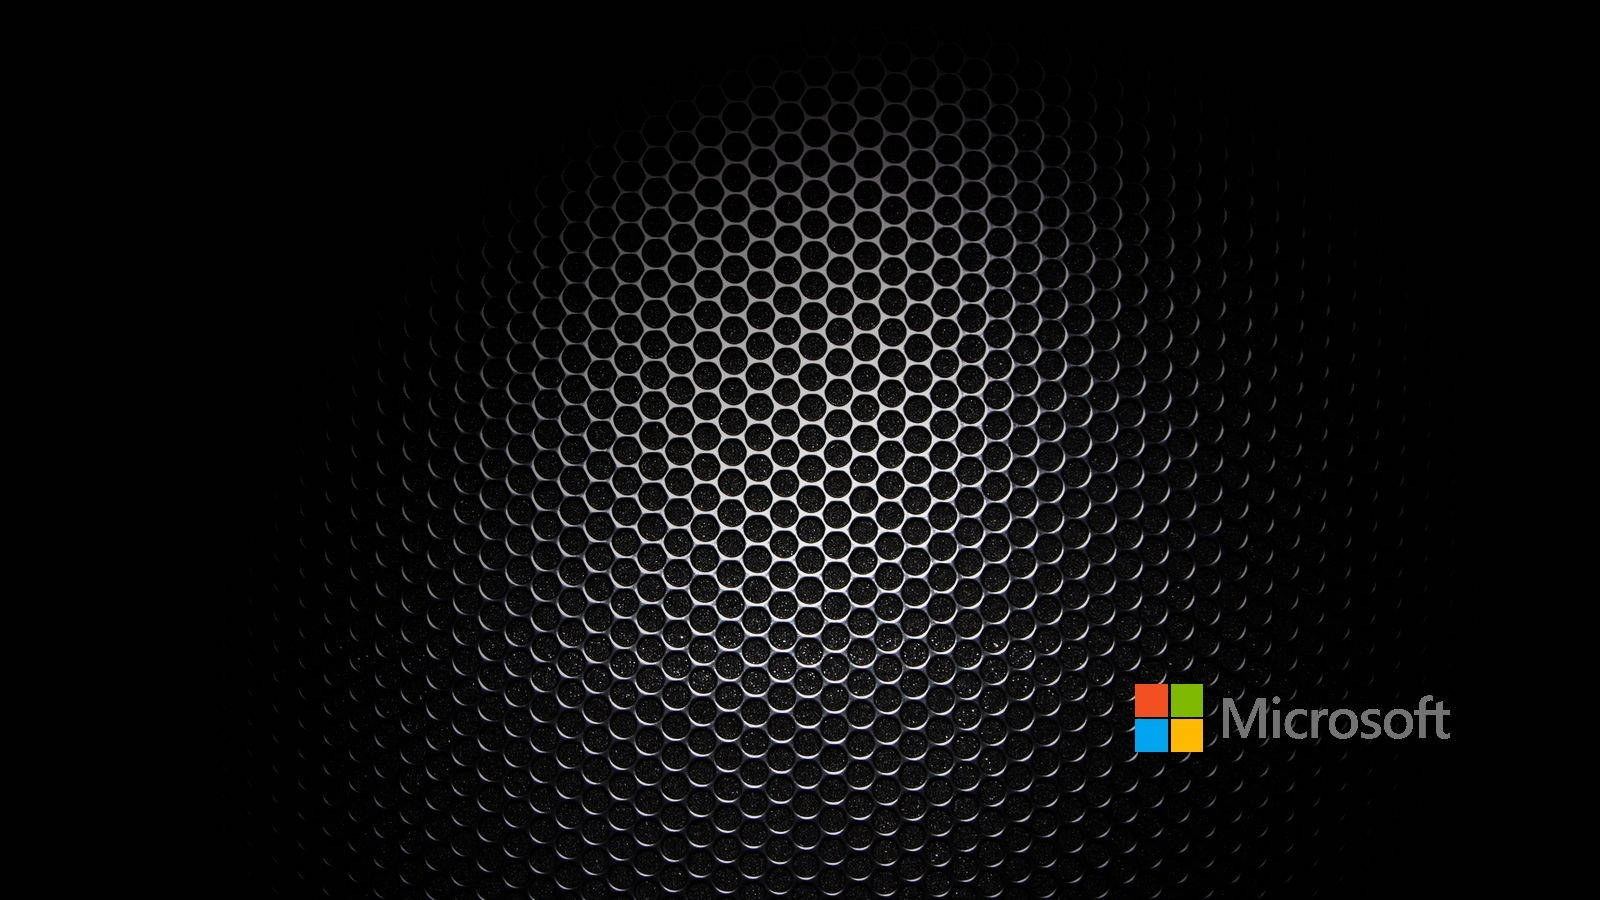 Microsoft Black Honeycomb Metal Mesh Wallpaper